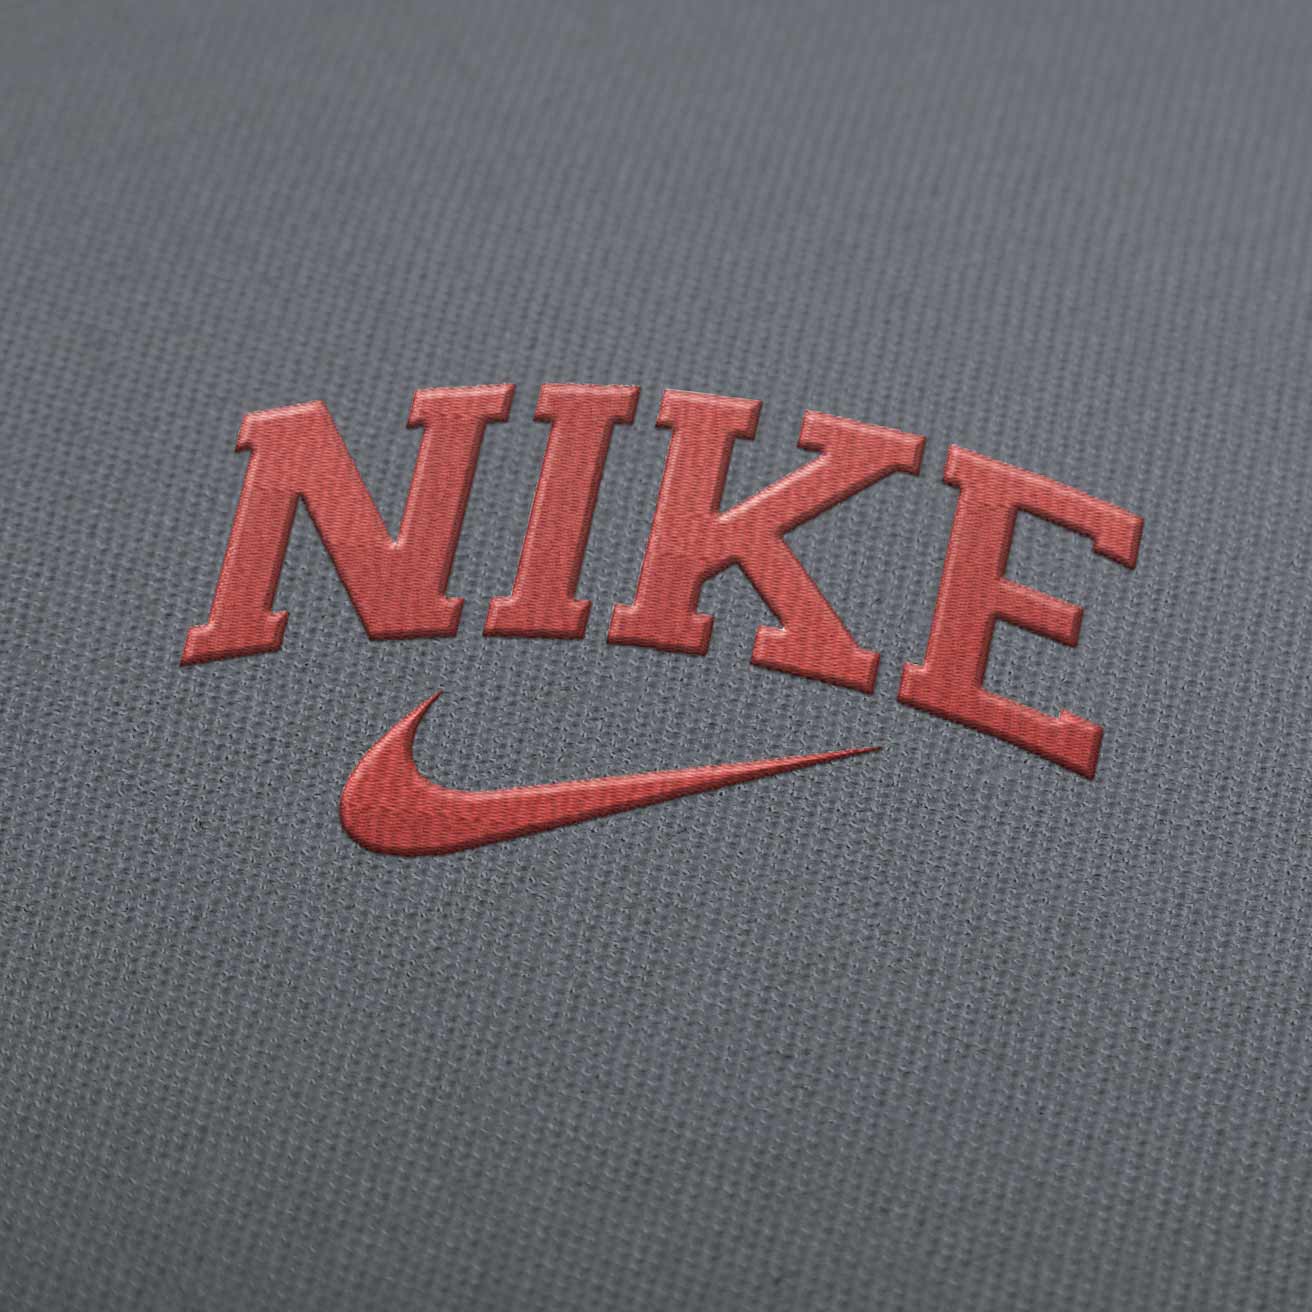 Diseño de bordado bordes del de Nike Descargar EmbroideryDownload